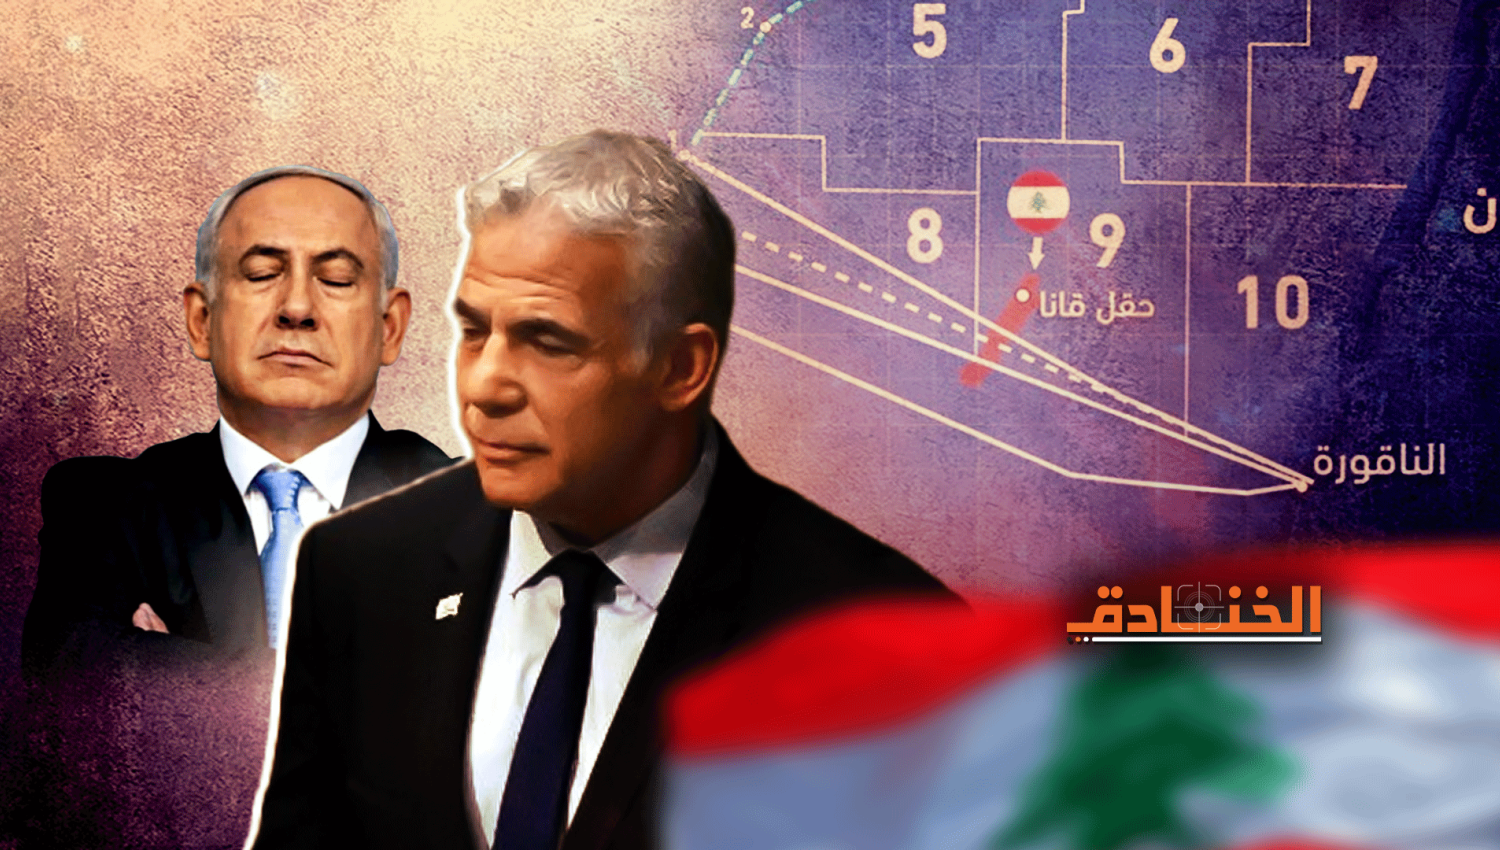 يديعوت: الاتفاق مع لبنان يضعف قدرتنا على الدفاع